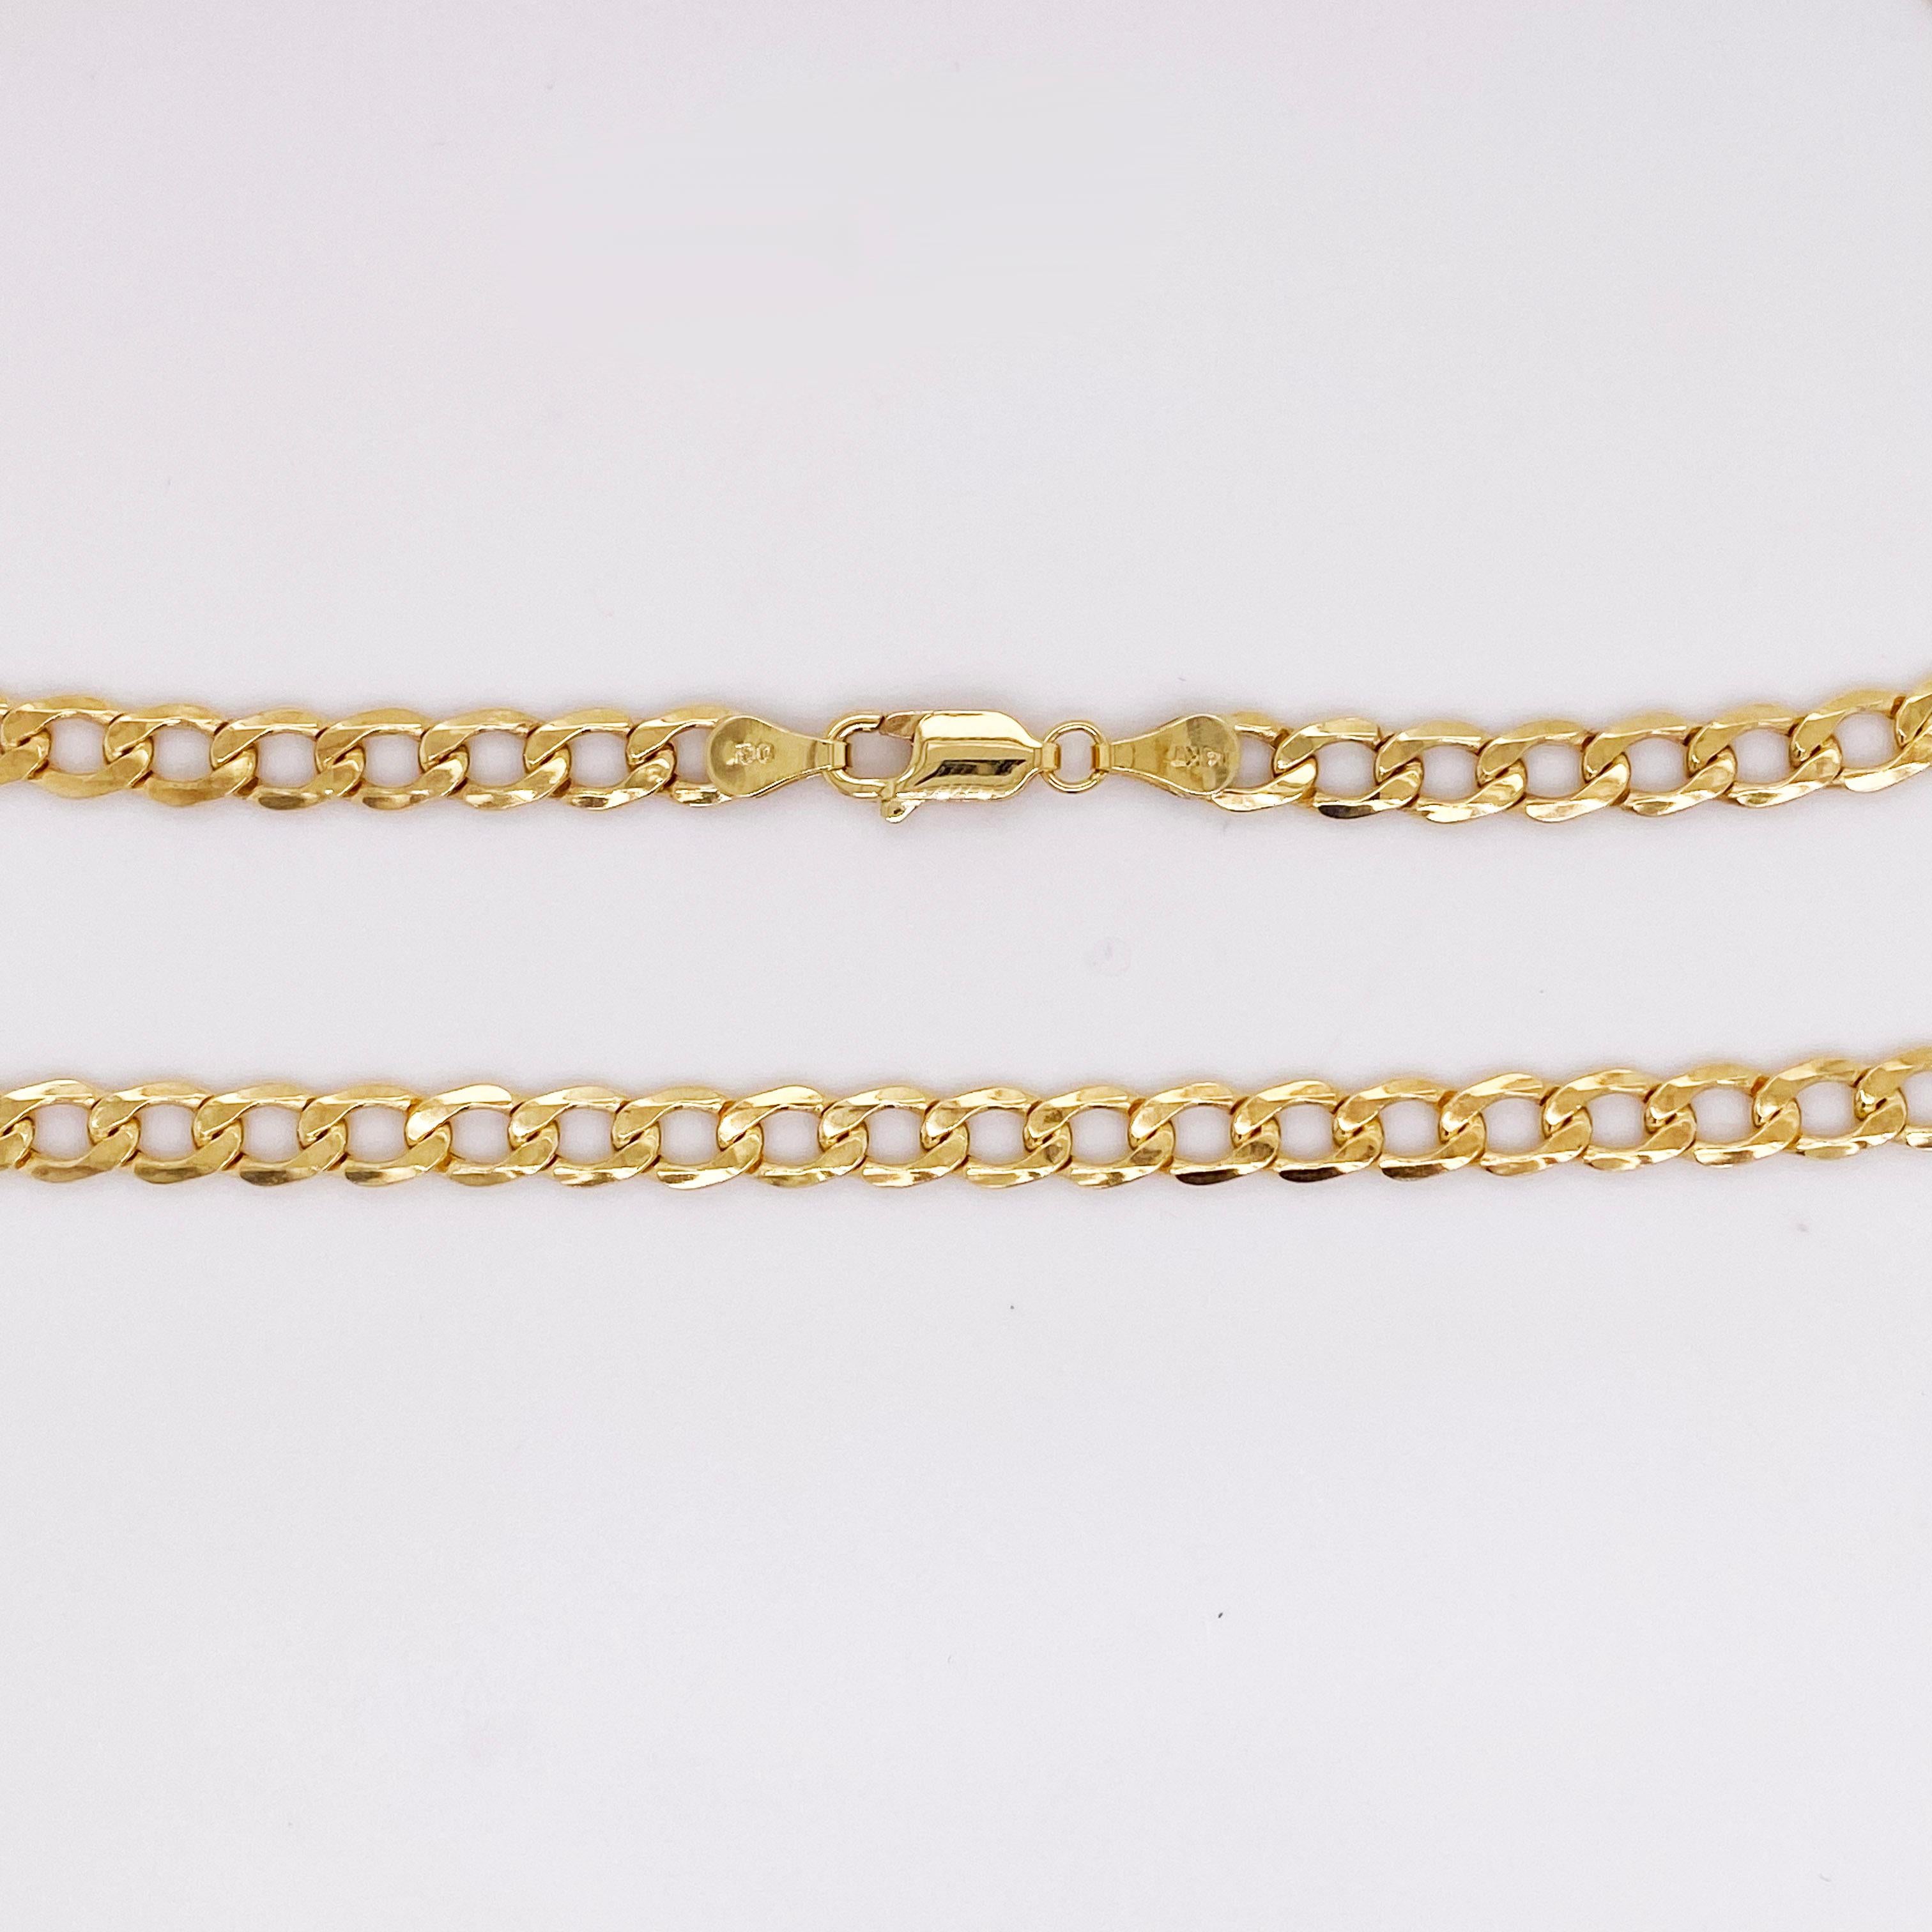 Collier à chaîne cubaine de Miami, ou chaîne de trottoir, en or jaune 14k. Ce collier est le collier à chaîne le plus en vogue dans la mode d'aujourd'hui ! Les gros bijoux en or sont de retour et meilleurs que jamais ! Ajoutez cette chaîne à votre